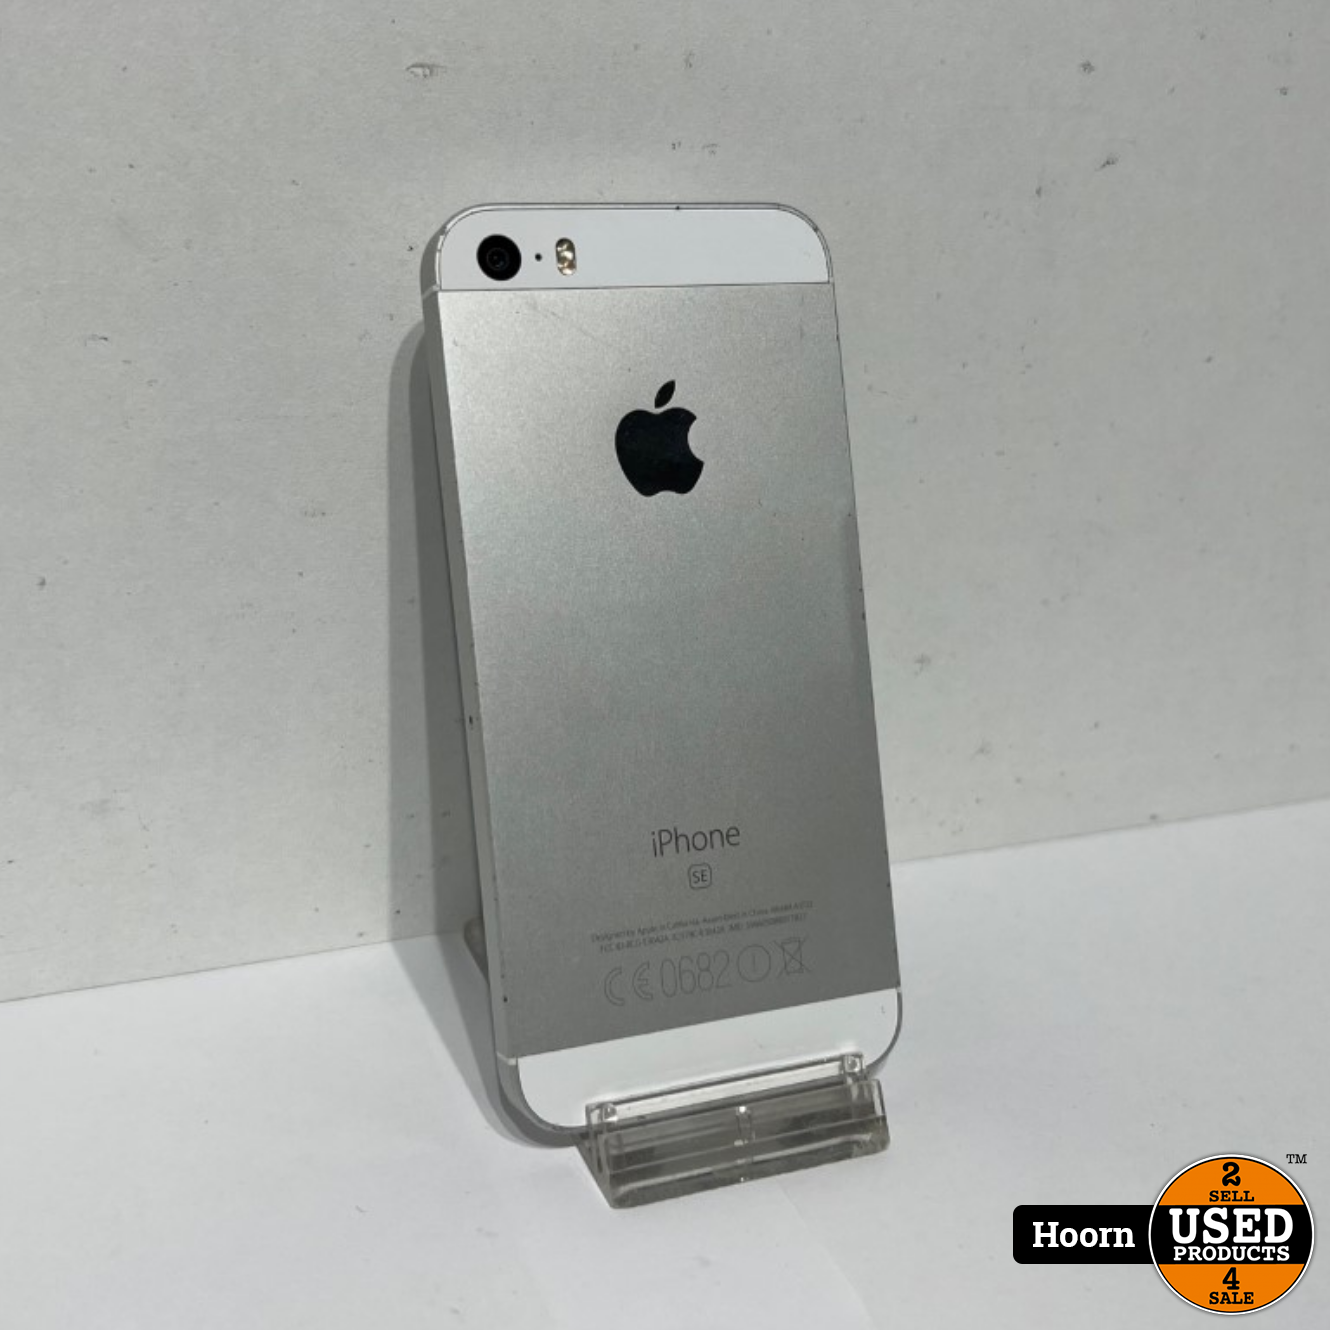 belofte Vooravond Onbevredigend Apple iPhone iPhone SE 32GB Silver Los Toestel Accu: 82% - Used Products  Hoorn